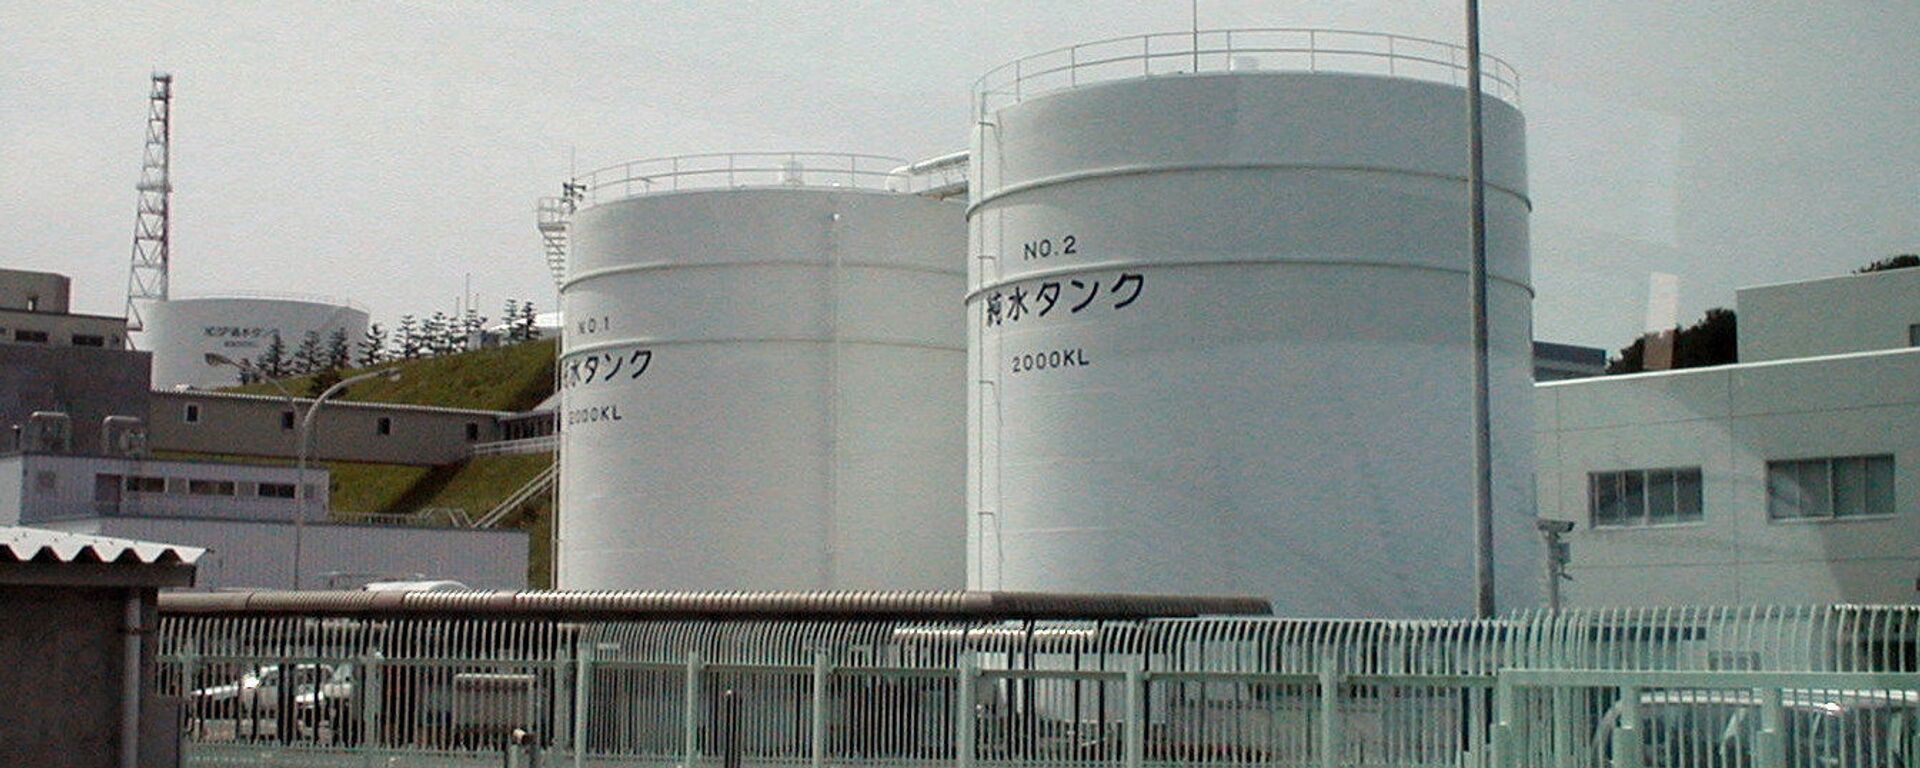 Nhà máy điện hạt nhân Fukushima-1 tại Nhật Bản được xây dựng vào những năm 1960. Vào thời điểm xảy ra thảm họa, đây là một trong những nhà máy vận hành lâu đời nhất, không có hệ thống an toàn chủ động và thụ động, như các nhà máy hiện đại. - Sputnik Việt Nam, 1920, 04.08.2023